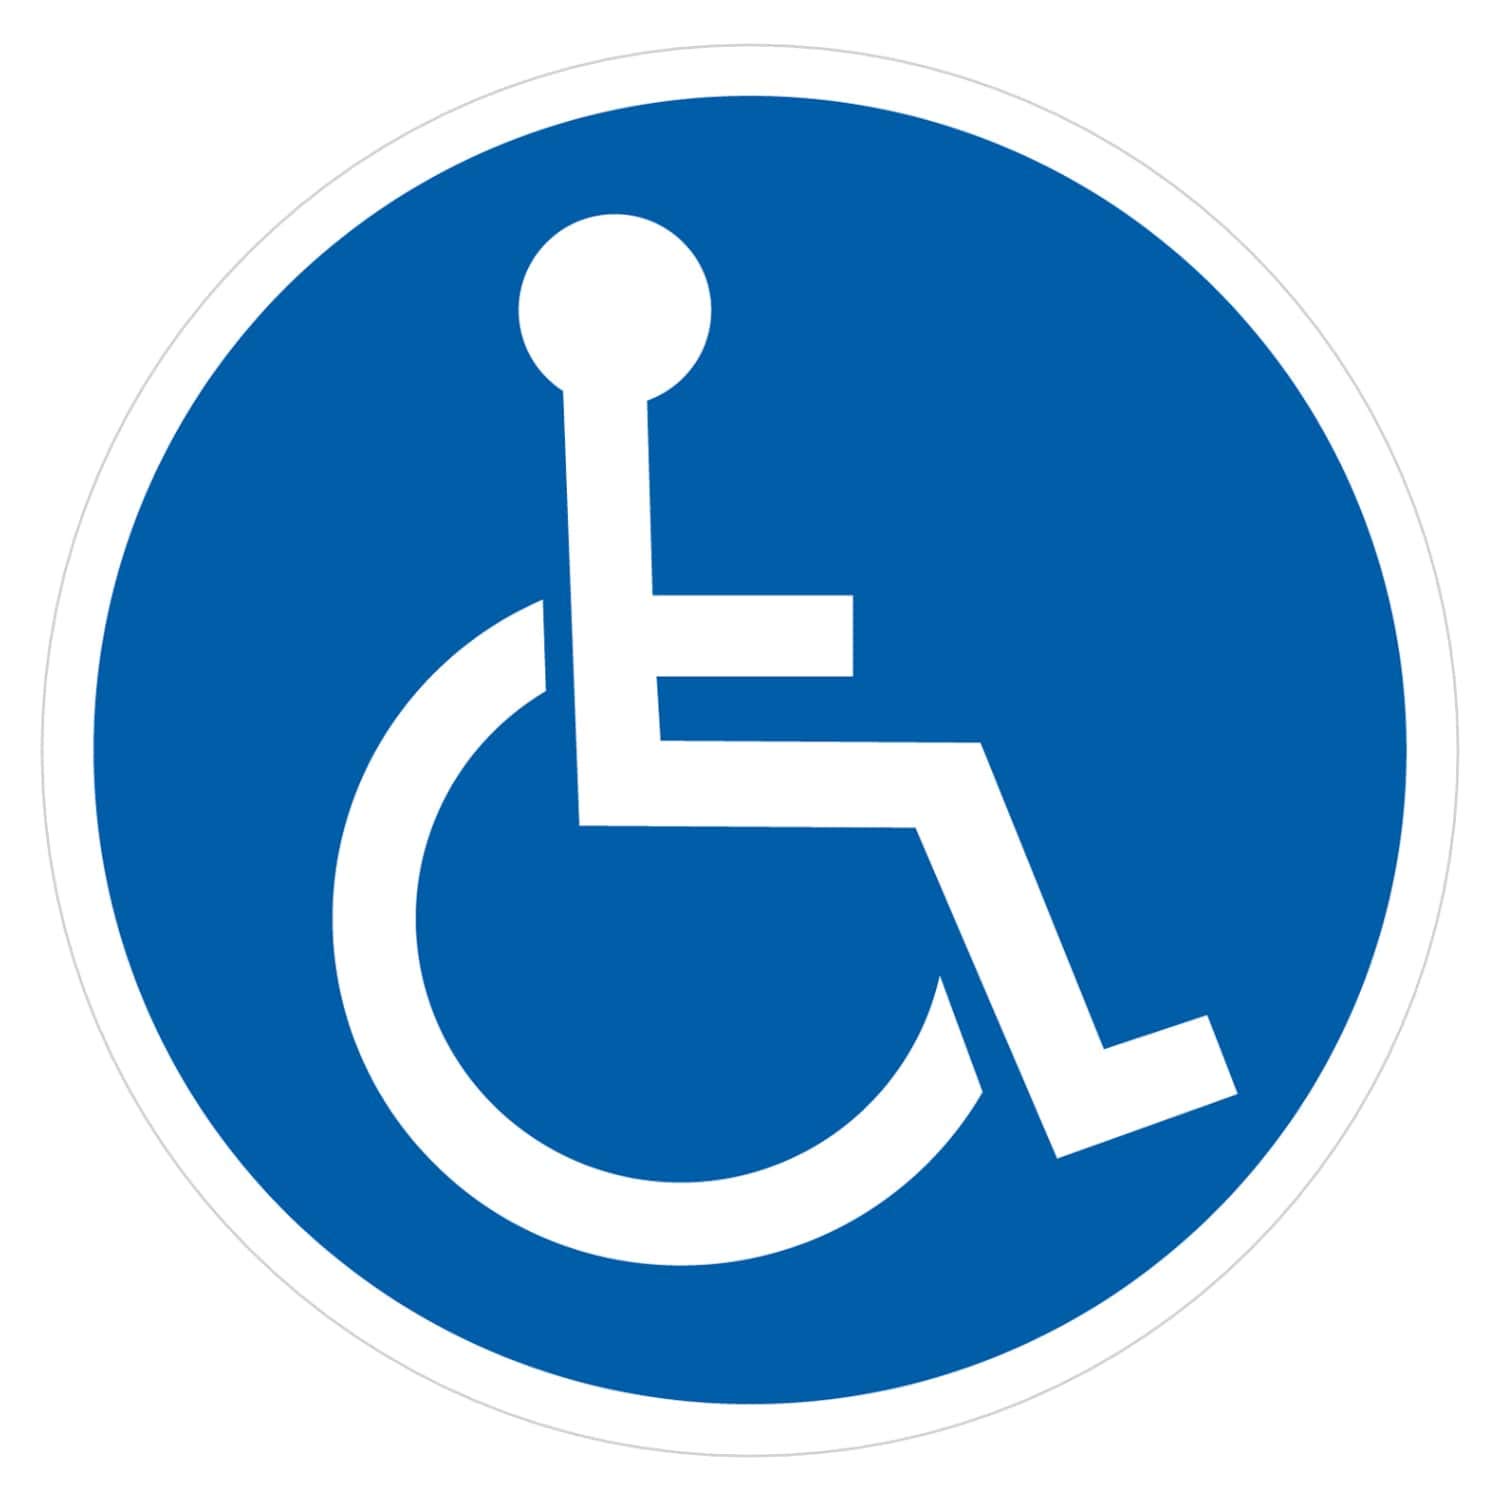 deformaze Sticker Rollstuhlfahrer Behinderten Aufkleber Warnaufkleber Selbstklebend KFZ Auto Scheibe UV Wetterfest Rund Blau Weiß - Verschiedene Größen wählbar (10 cm) von deformaze